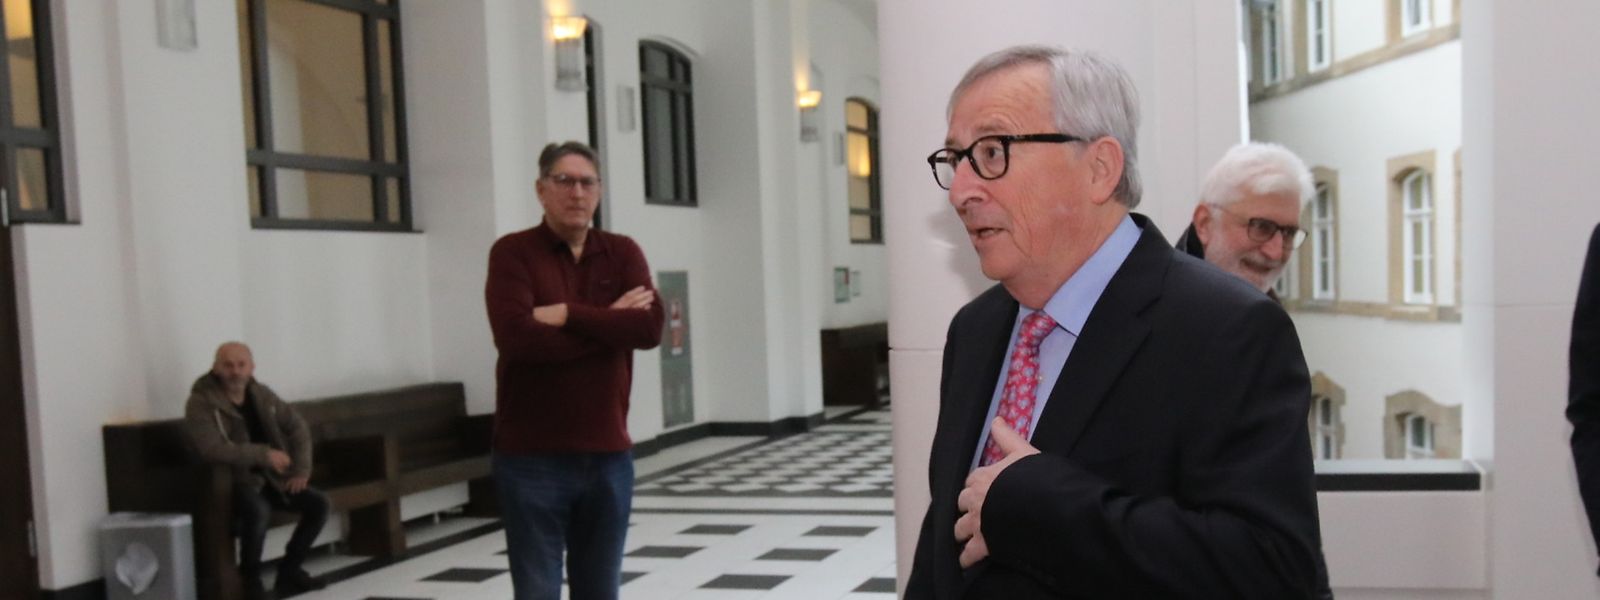 C'est la deuxième fois que Jean-Claude Juncker est entendu comme témoin dans un procès.